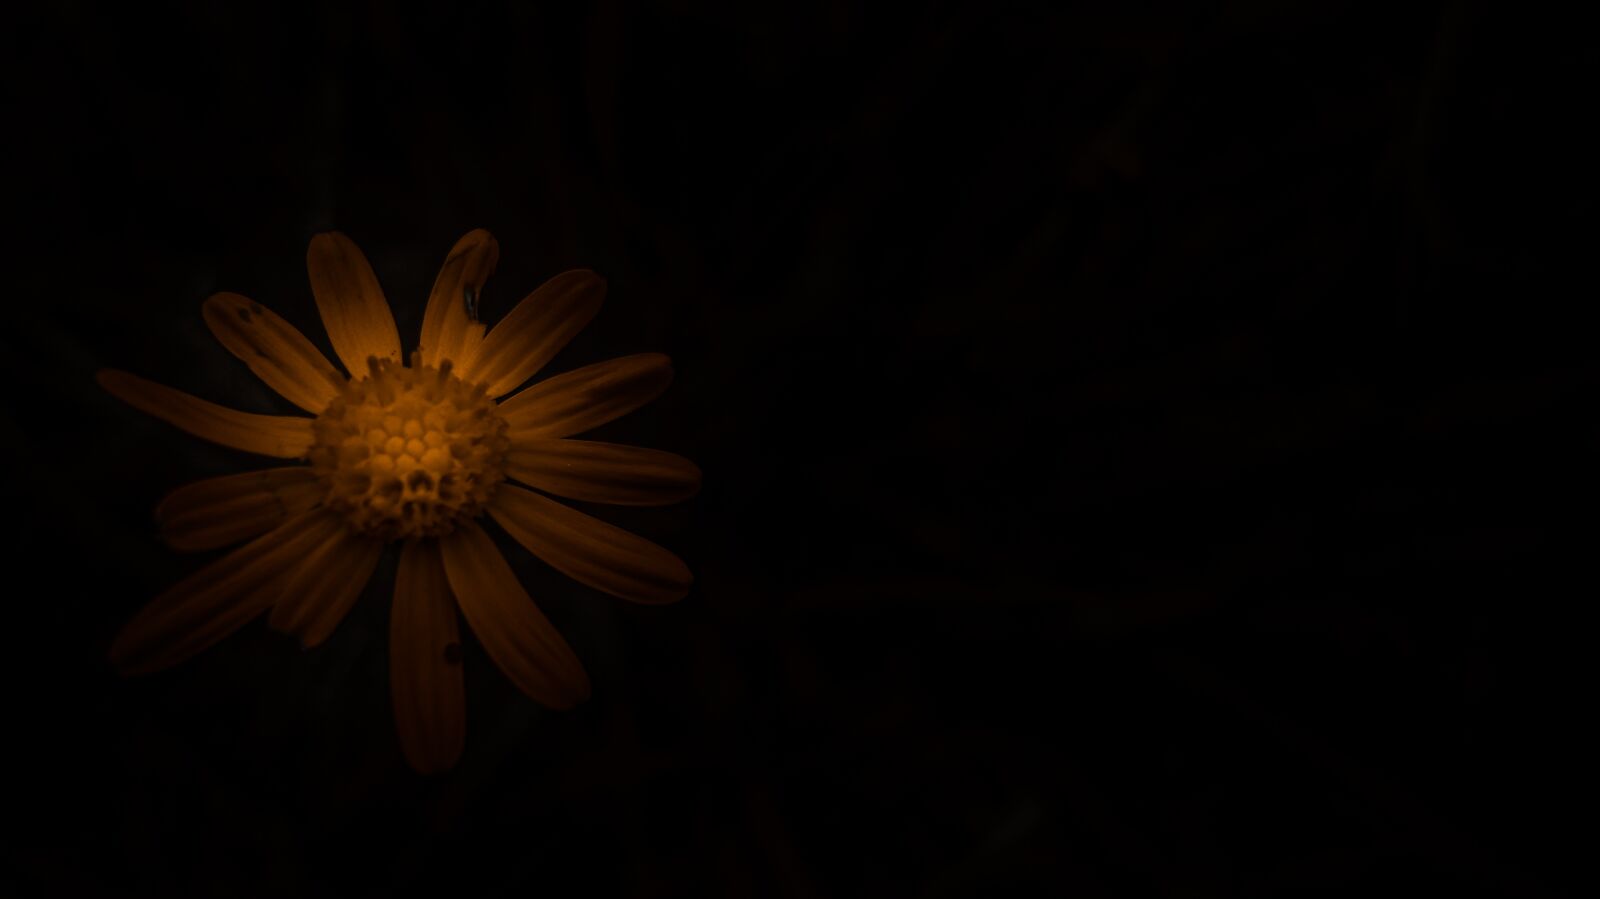 Sony Cyber-shot DSC-W510 sample photo. Sun, sunflower, yellow photography